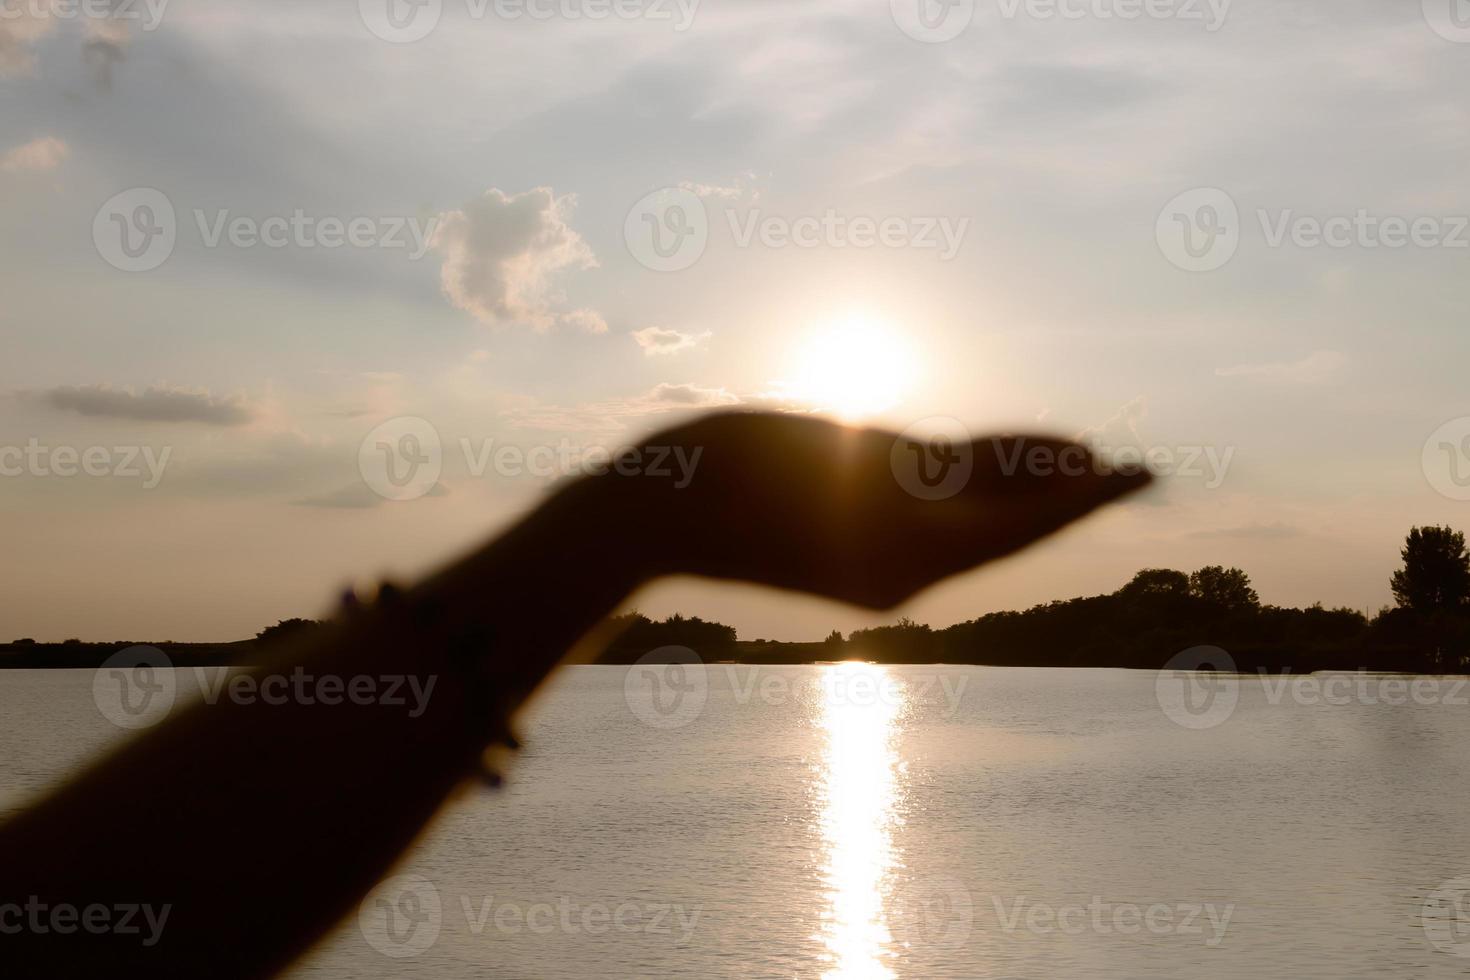 Nahaufnahme einer Frau, die bei Sonnenuntergang die Sonne in der Hand hält. foto